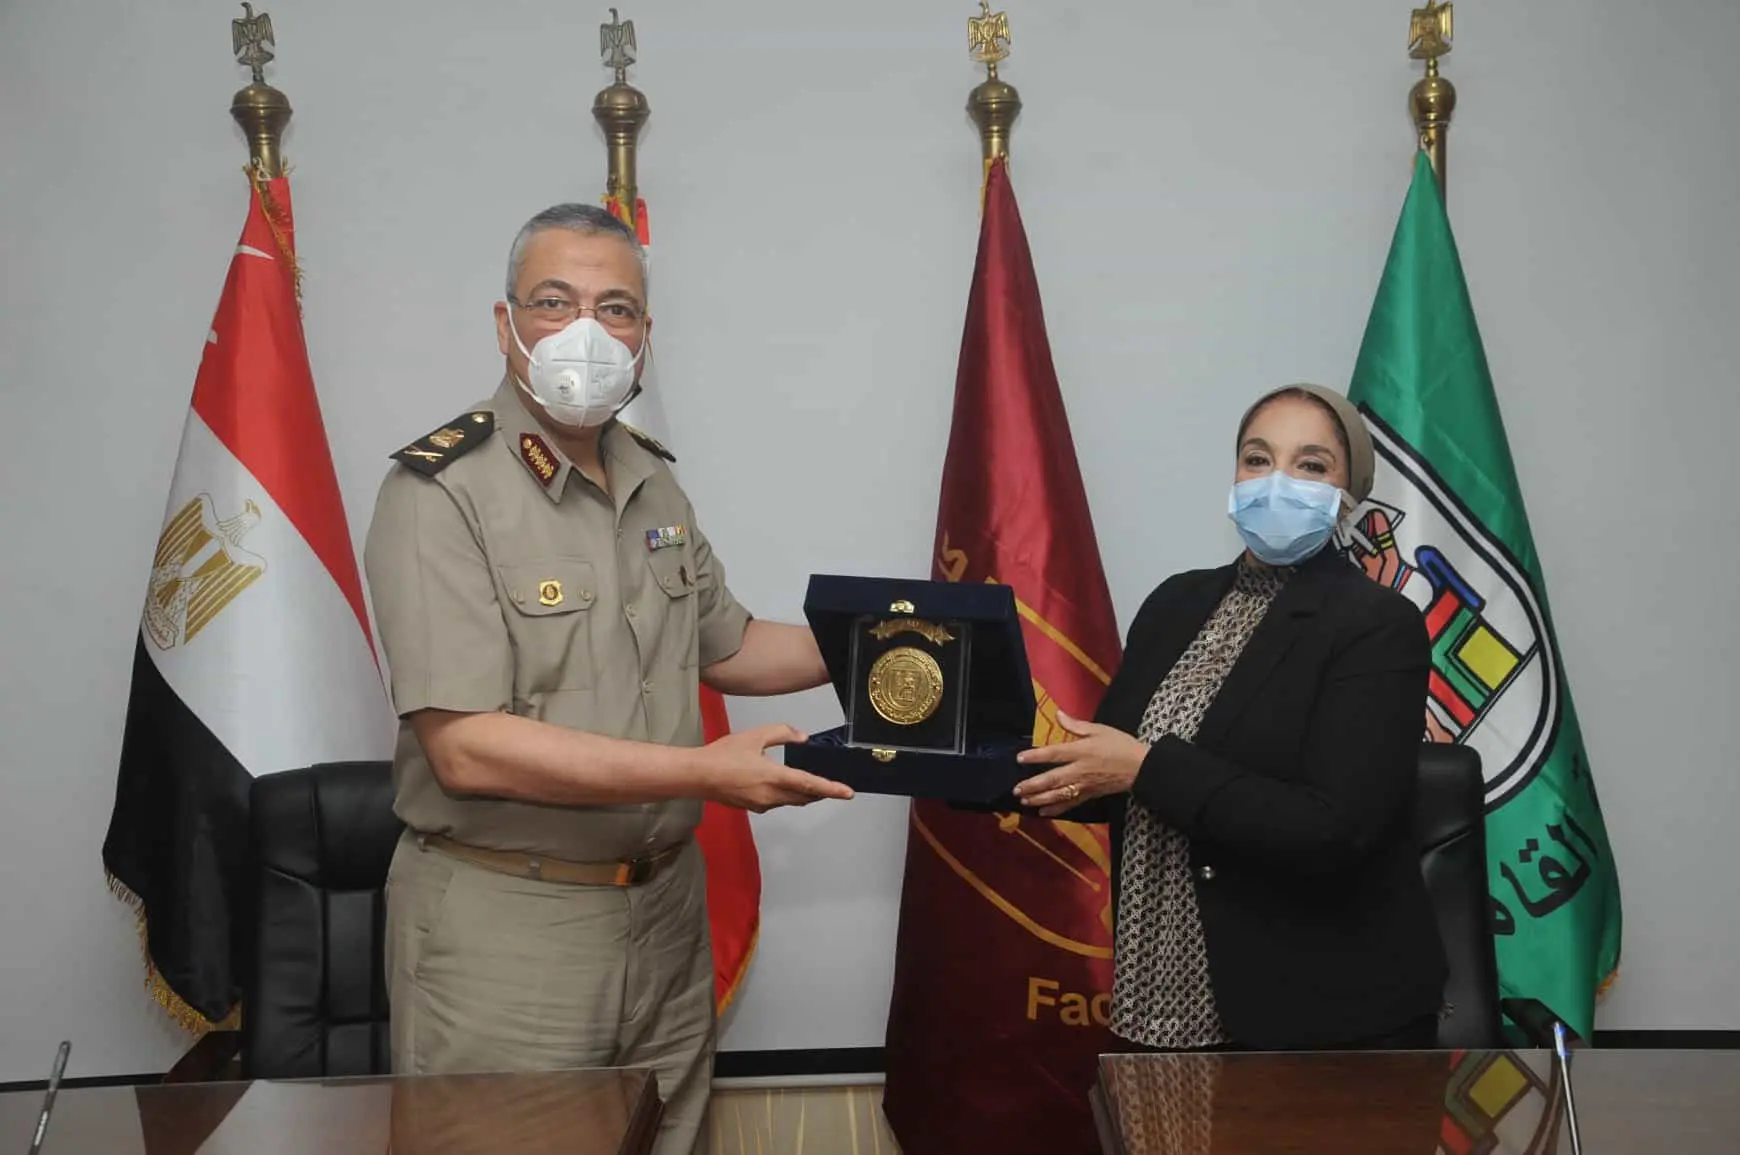 القوات المسلحة توقع بروتوكول تعاون مع كلية الطب بجامعة القاهرة